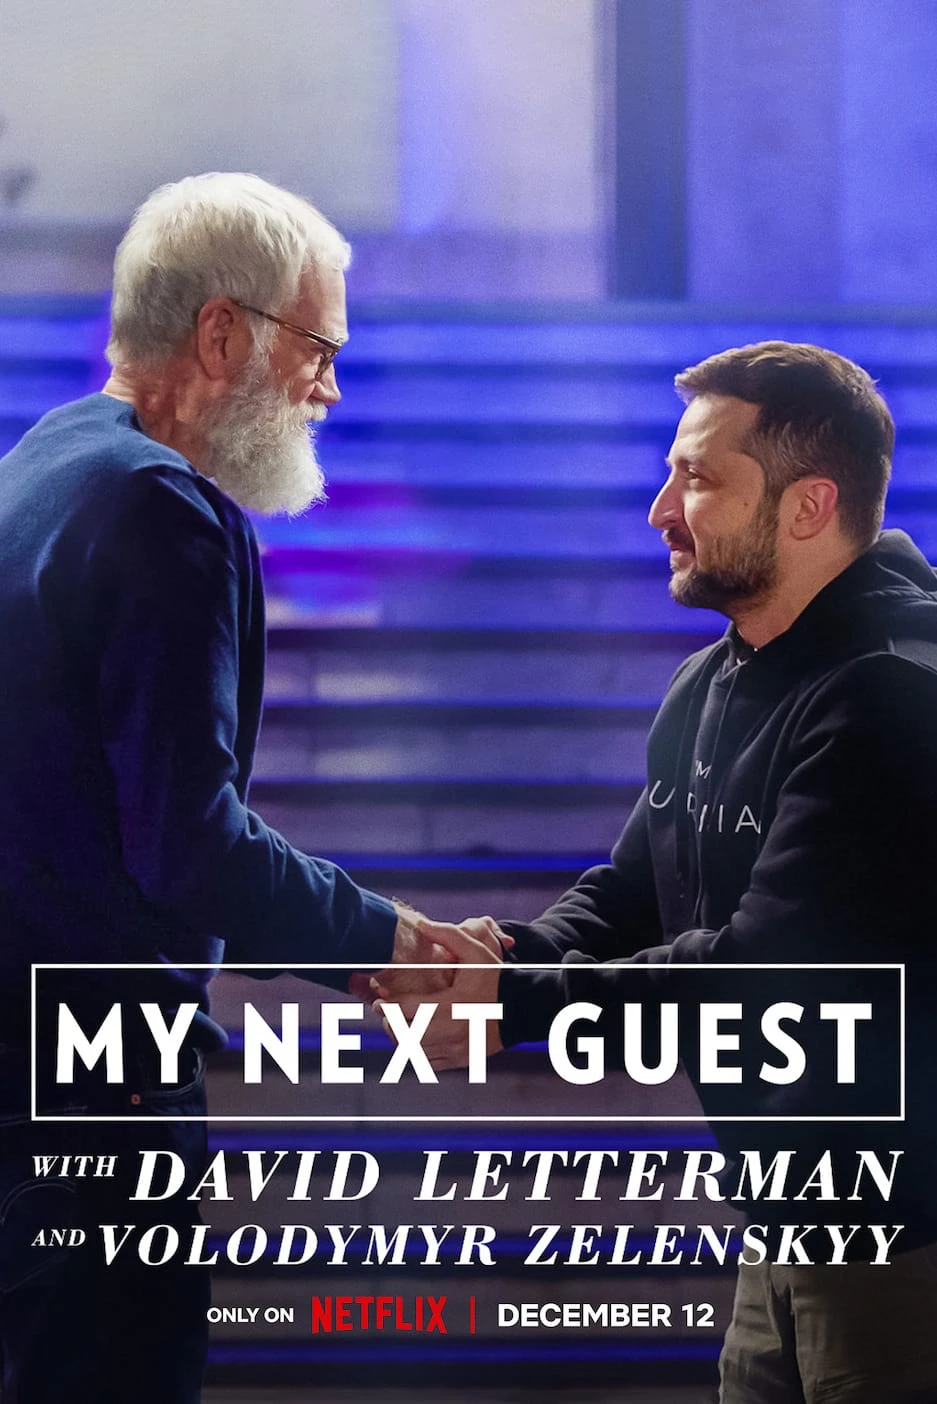 David Letterman: Vị khách tiếp theo là Volodymyr Zelenskyy | My Next Guest with David Letterman and Volodymyr Zelenskyy (2022)